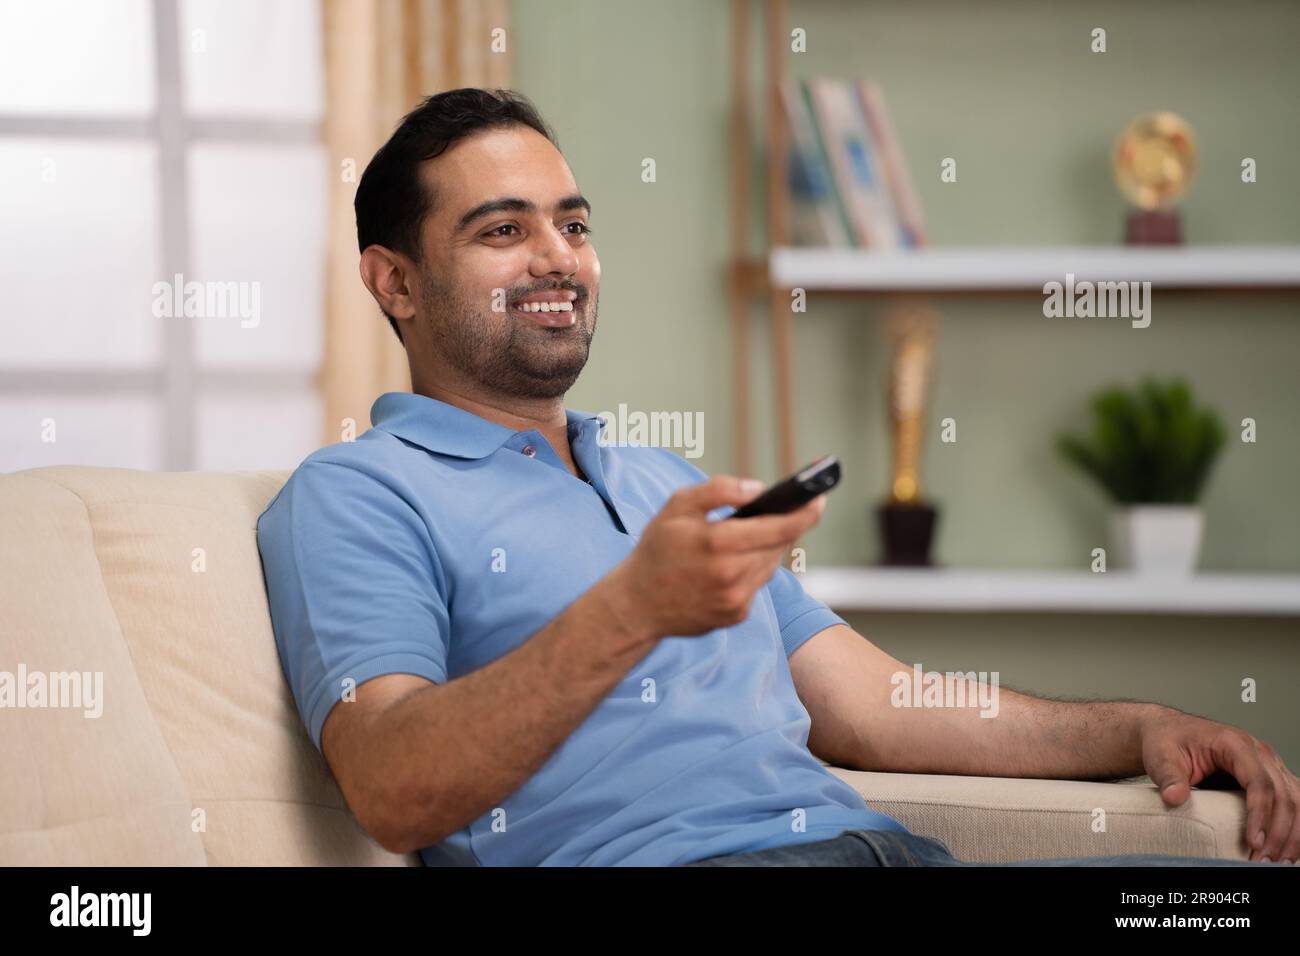 Rilassato uomo indiano felice che guarda le partite sportive dal vivo in tv o in televisione mentre si siede sul divano a casa - concetto di intrattenimento, attività ricreative e.. Foto Stock